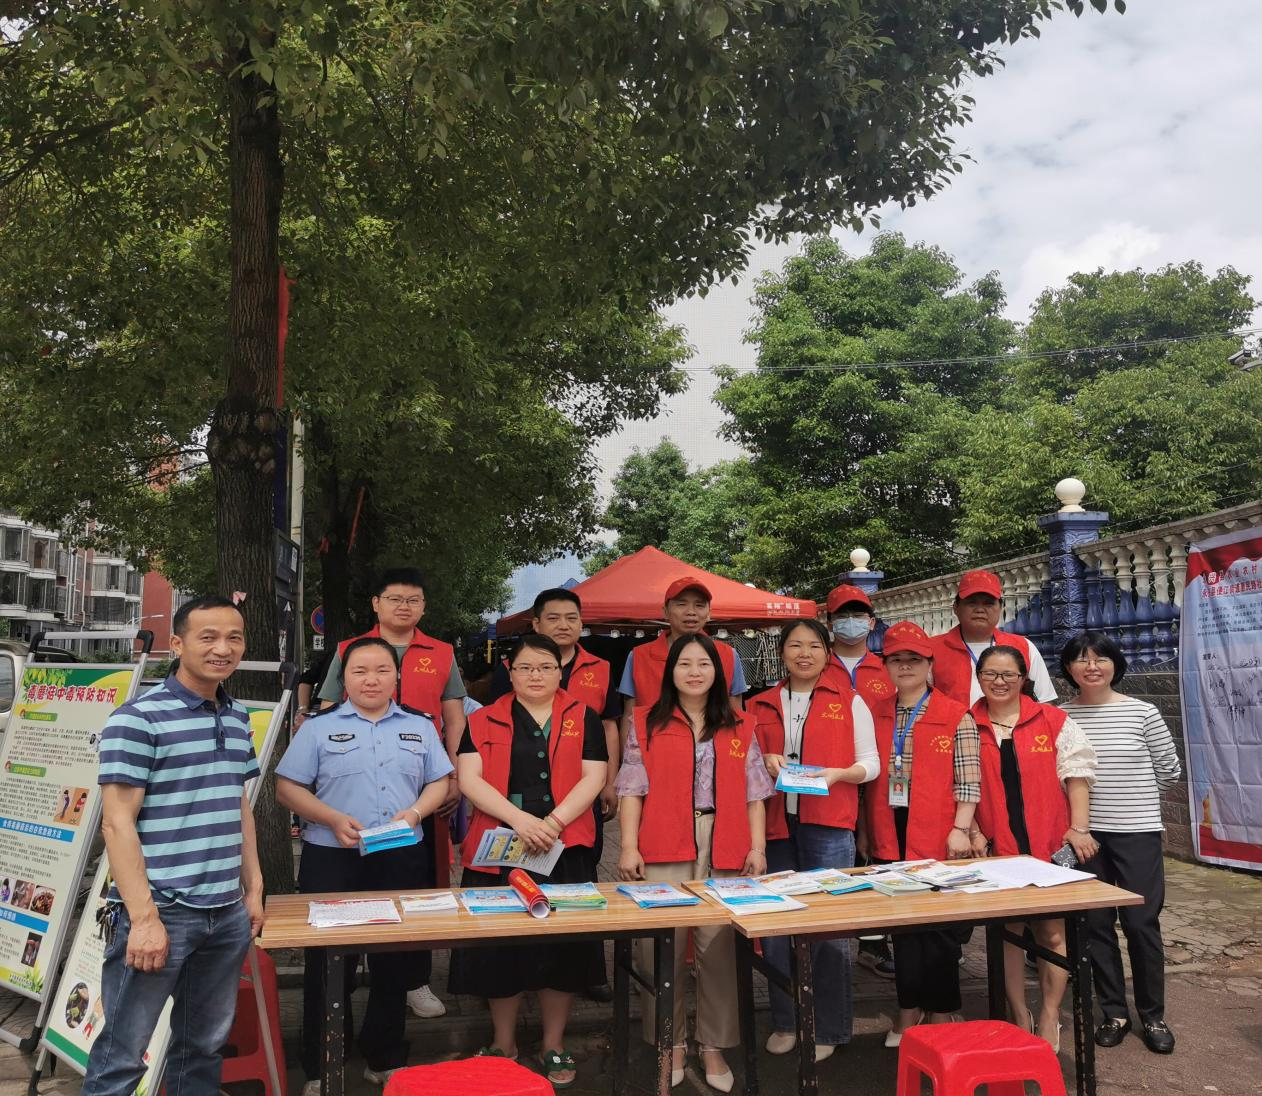 永兴县惠民路社区：“舌尖上的安全”毒蘑菇宣传进小区志愿服务活动